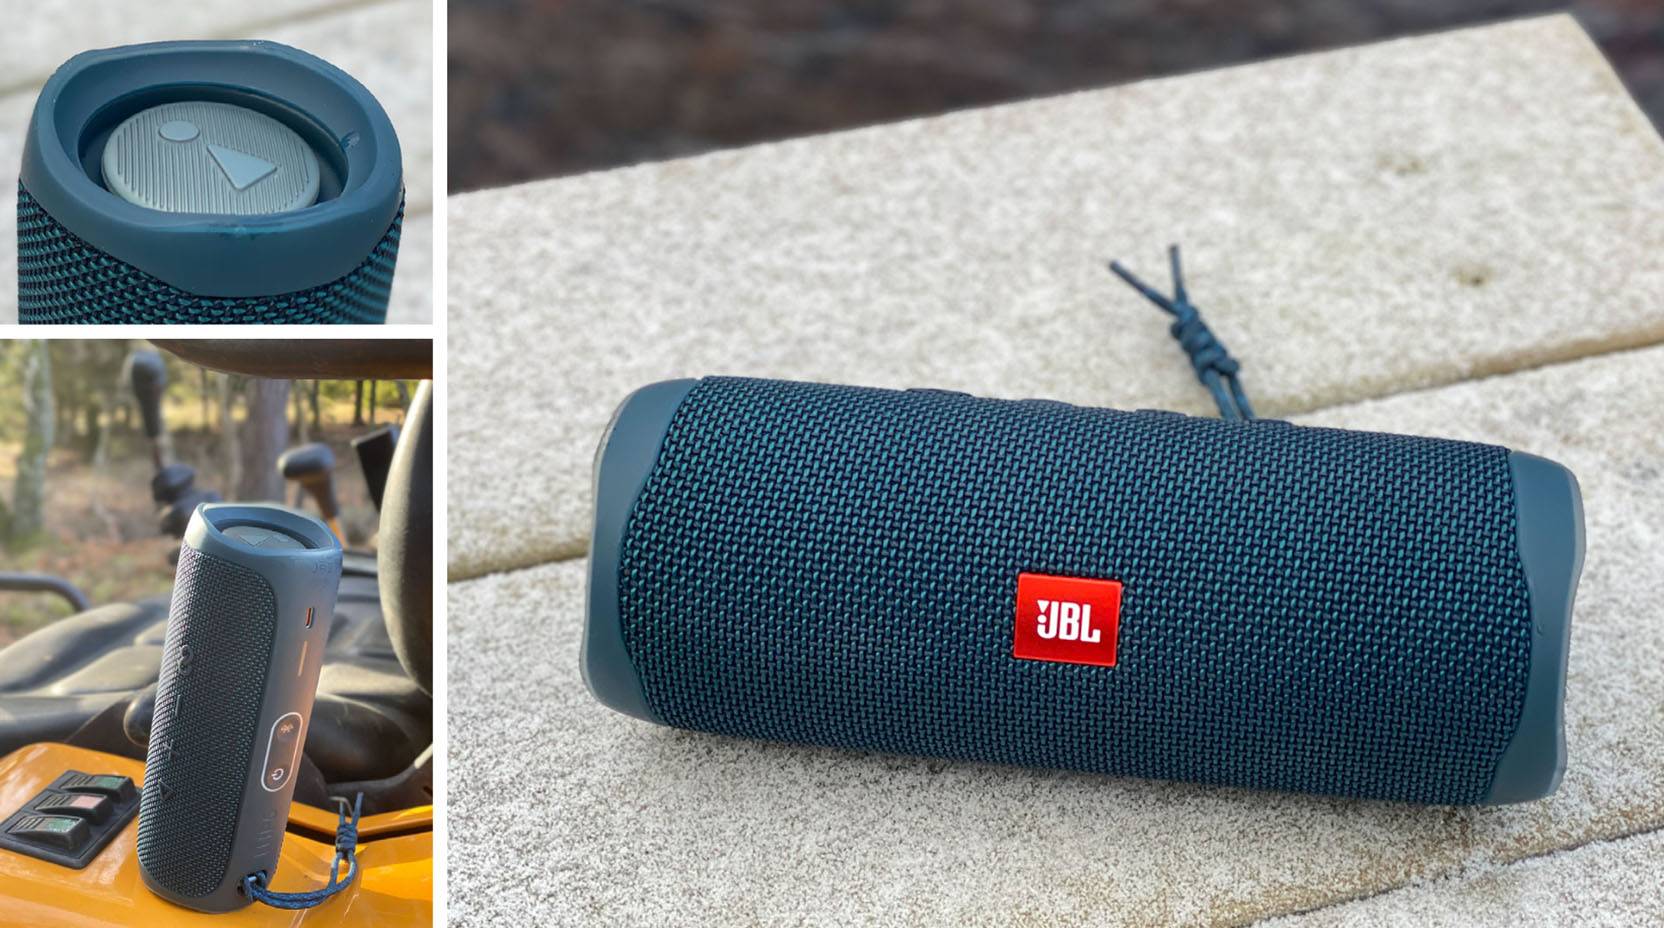 GUIDE: Allt du behöver veta om JBL:s högtalare